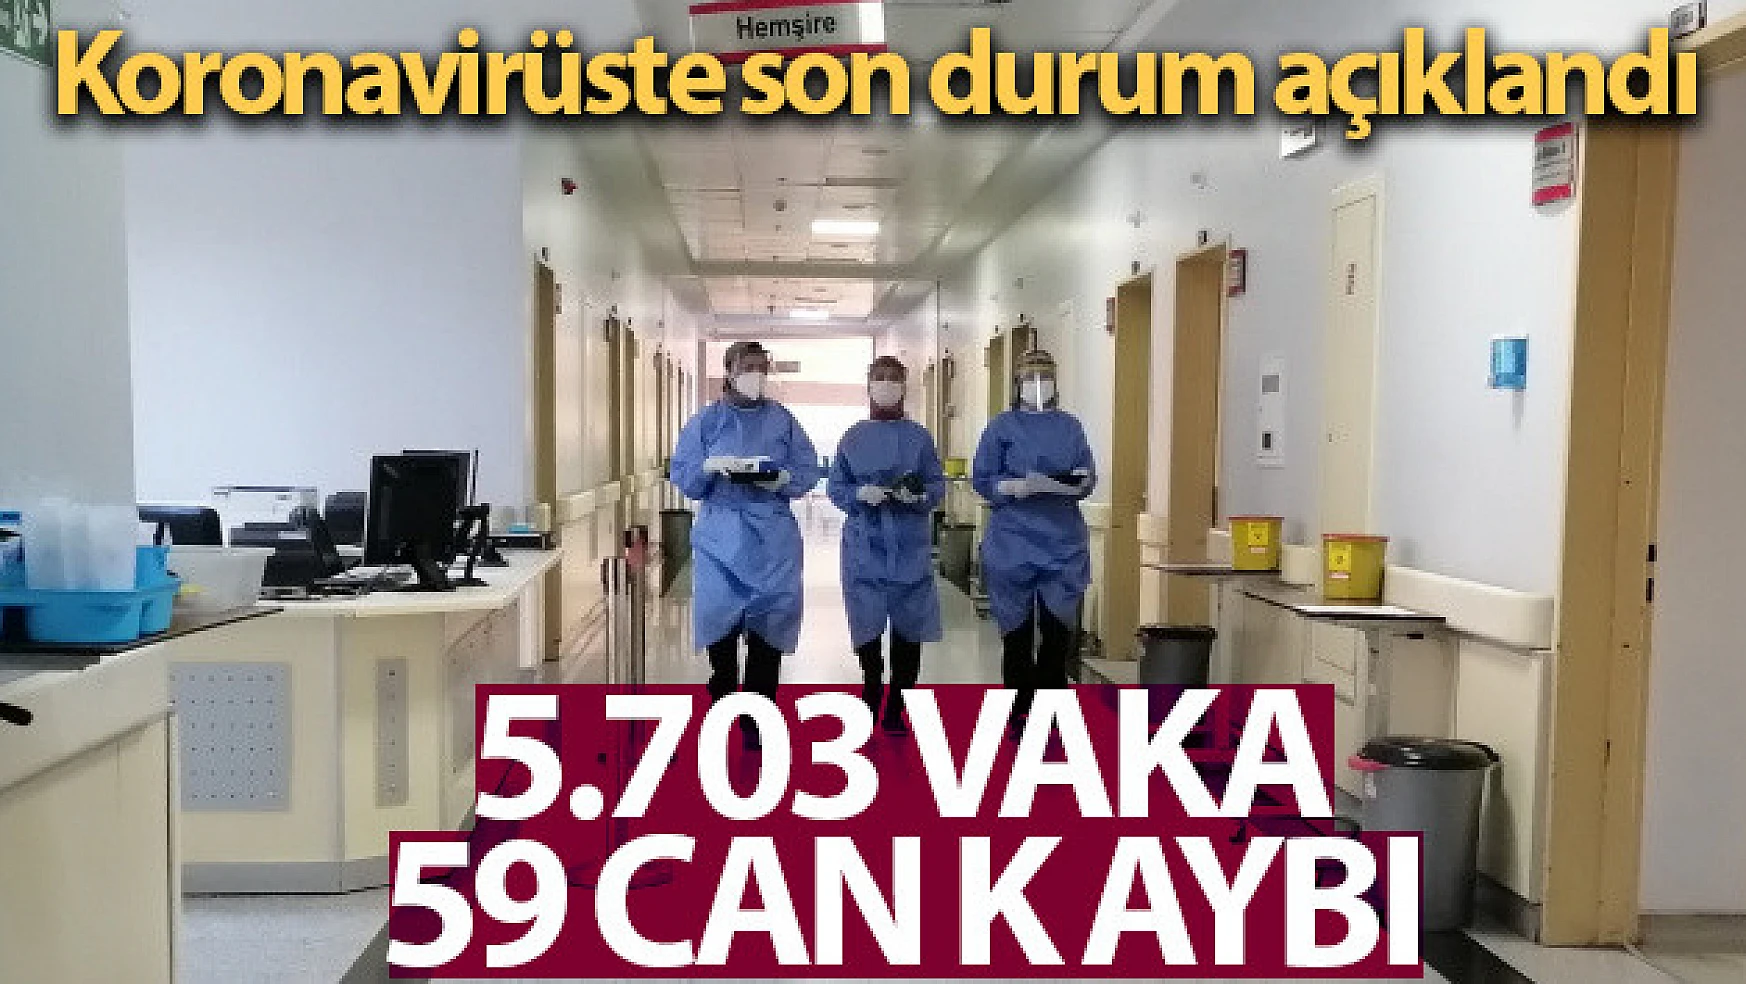 Son 24 saatte korona virüsten 59 kişi hayatını kaybetti